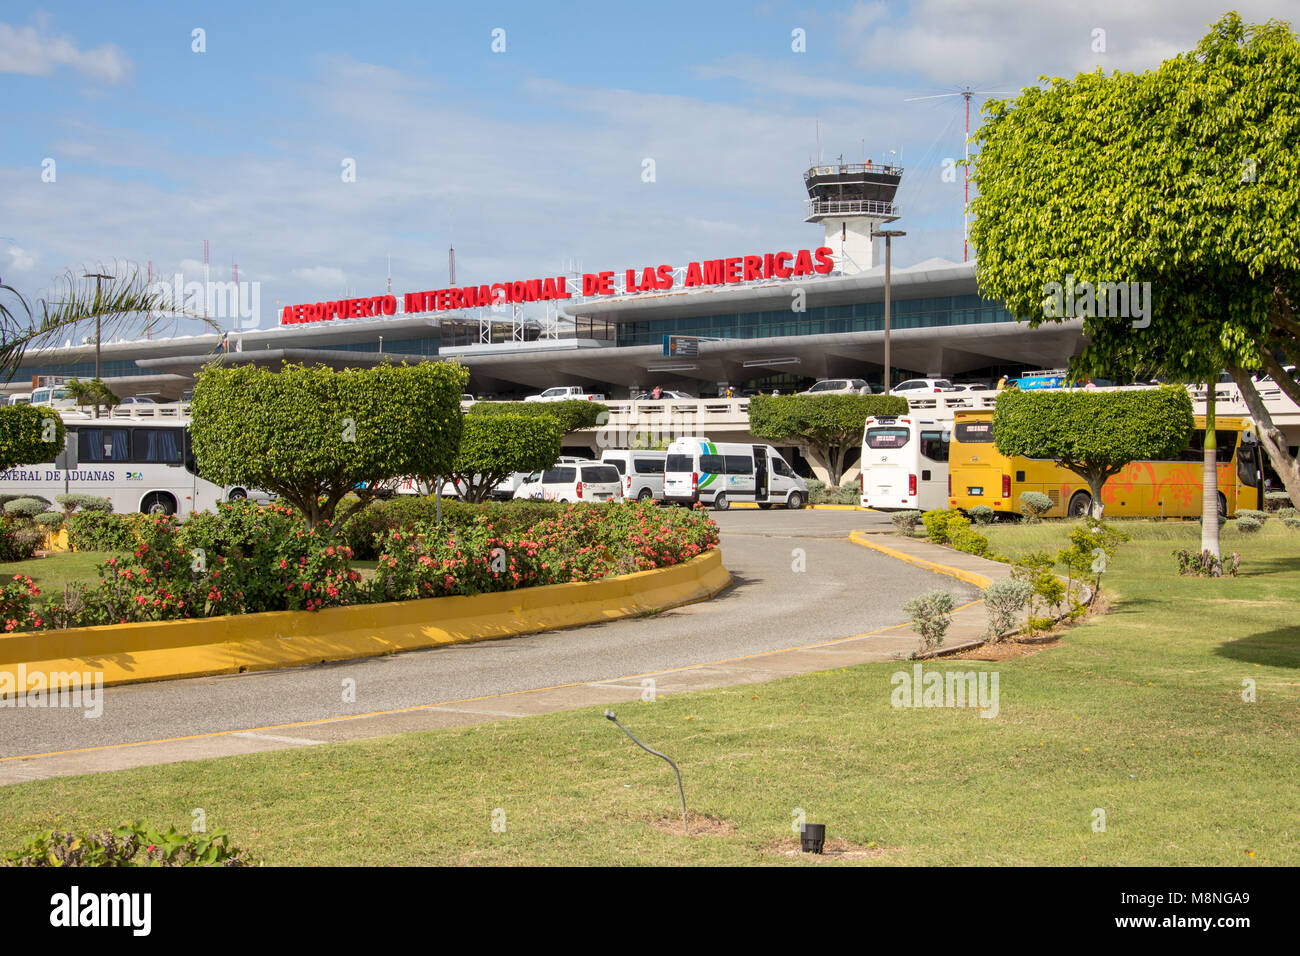 SDQ, Aeropuerto Las Américas, Airport Las Americas, Santo Domingo, Domnican Republic Stock Photo